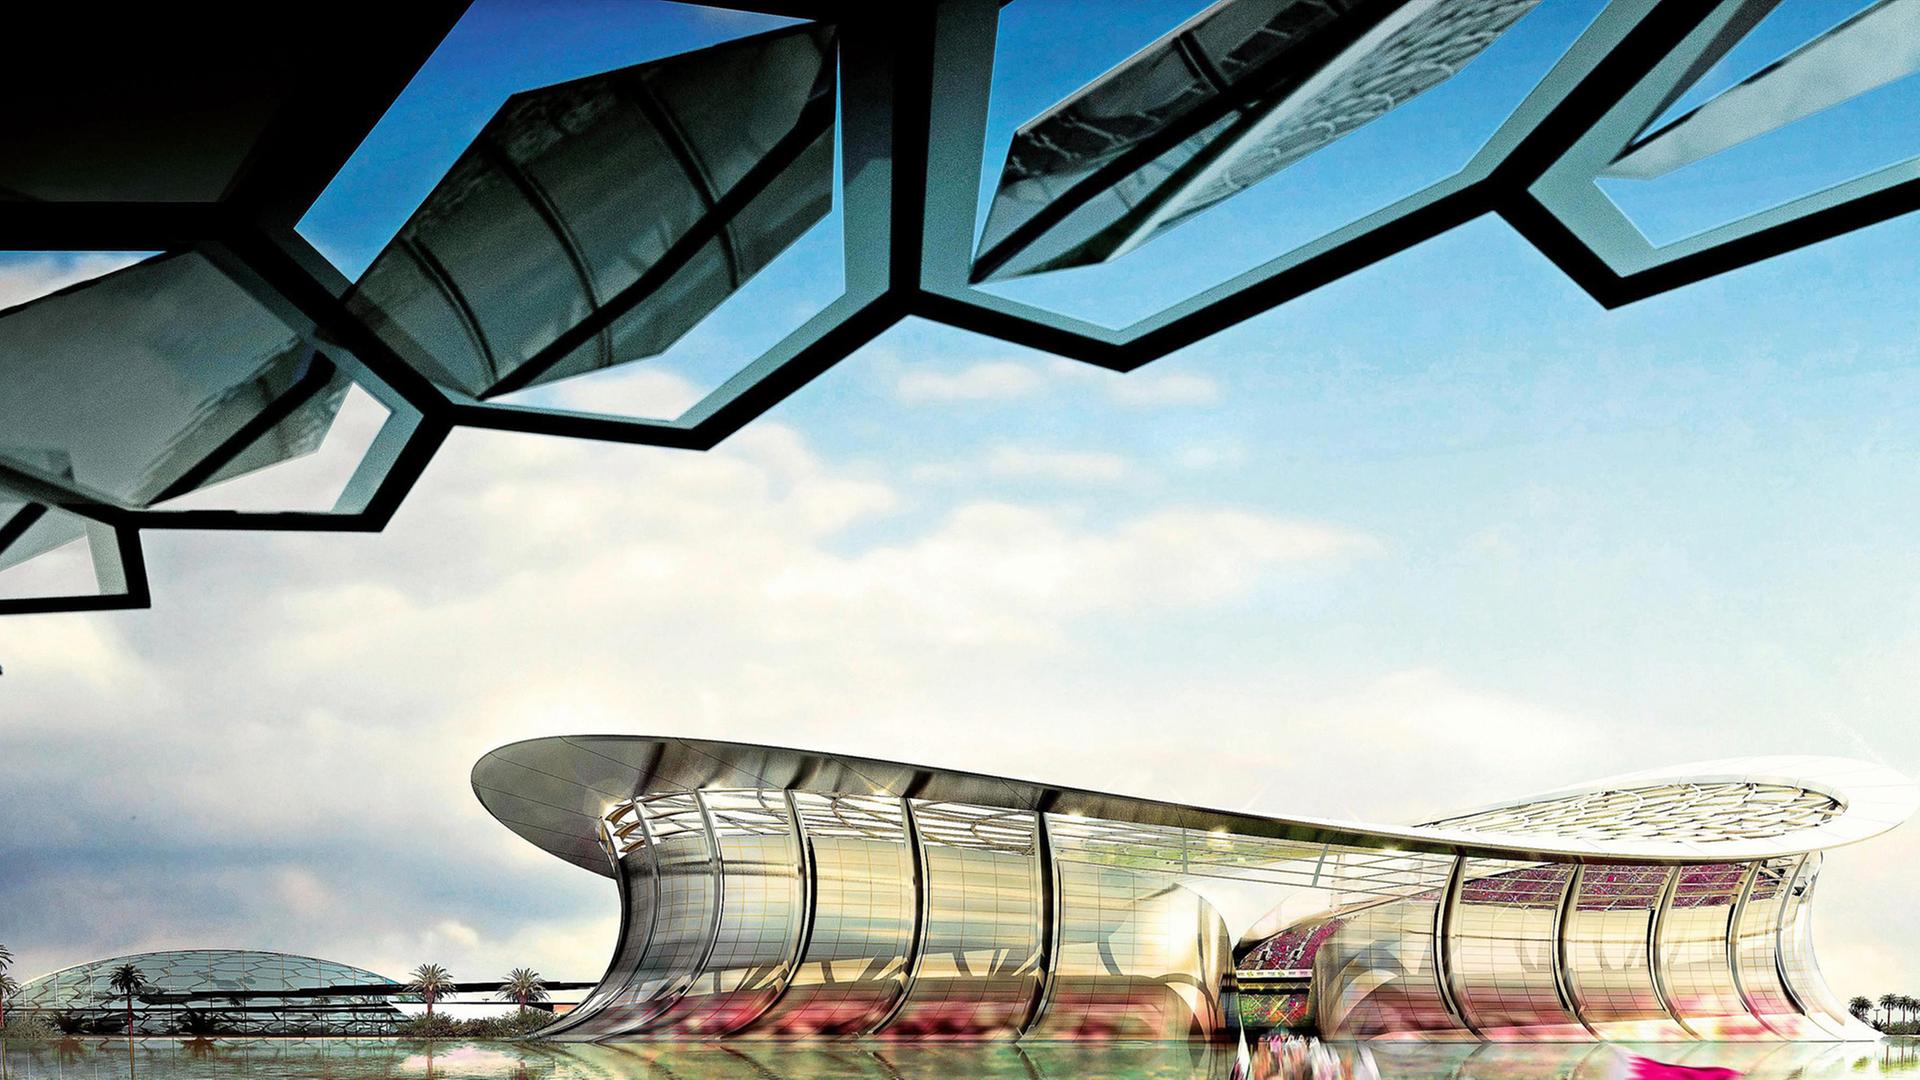 Ein Stadion in dem arabischen Emirat Katar. Da findet 2022 die Fußball-Weltmeisterschaft statt